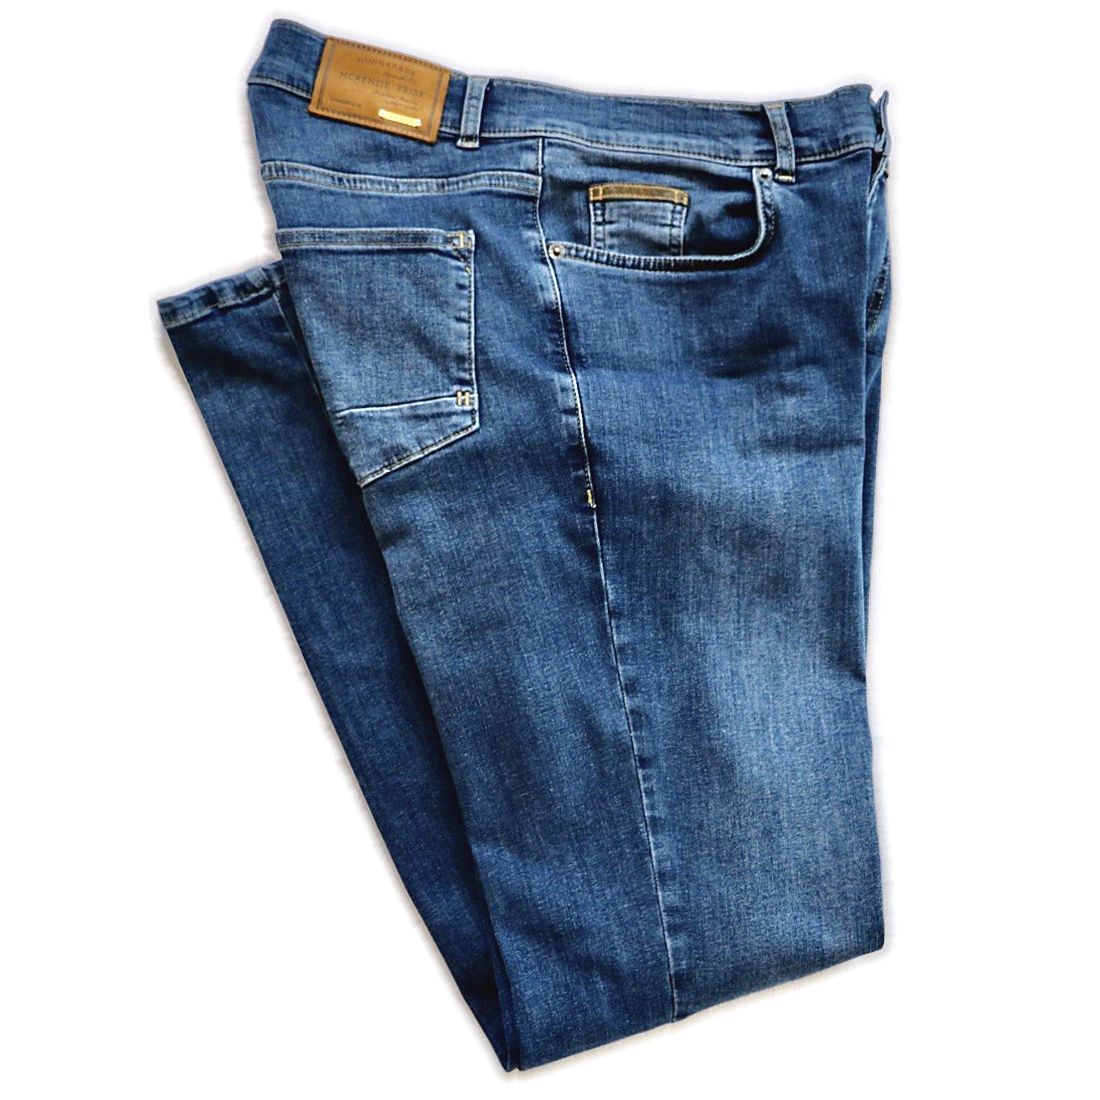 Ultra Flex Premium Denim Jean in Montgomery Medium Wash by McKenzie Tribe